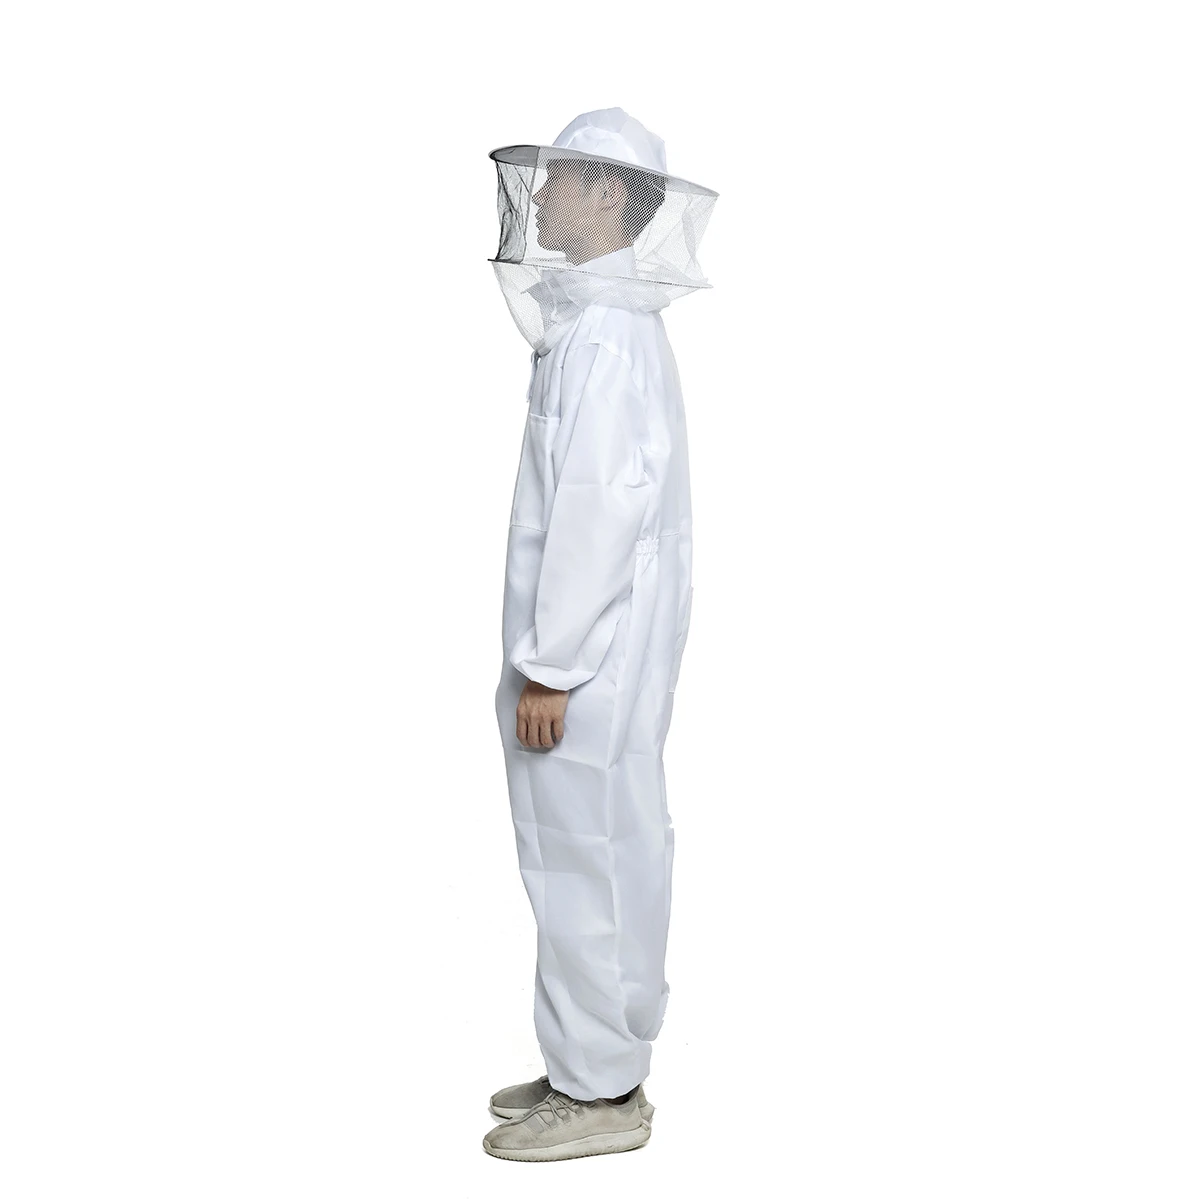 Полный костюм пчеловода одежда вуаль капюшон шляпа одежда куртка защита для Пчеловодство костюм пчеловоды пчелы костюм оборудование